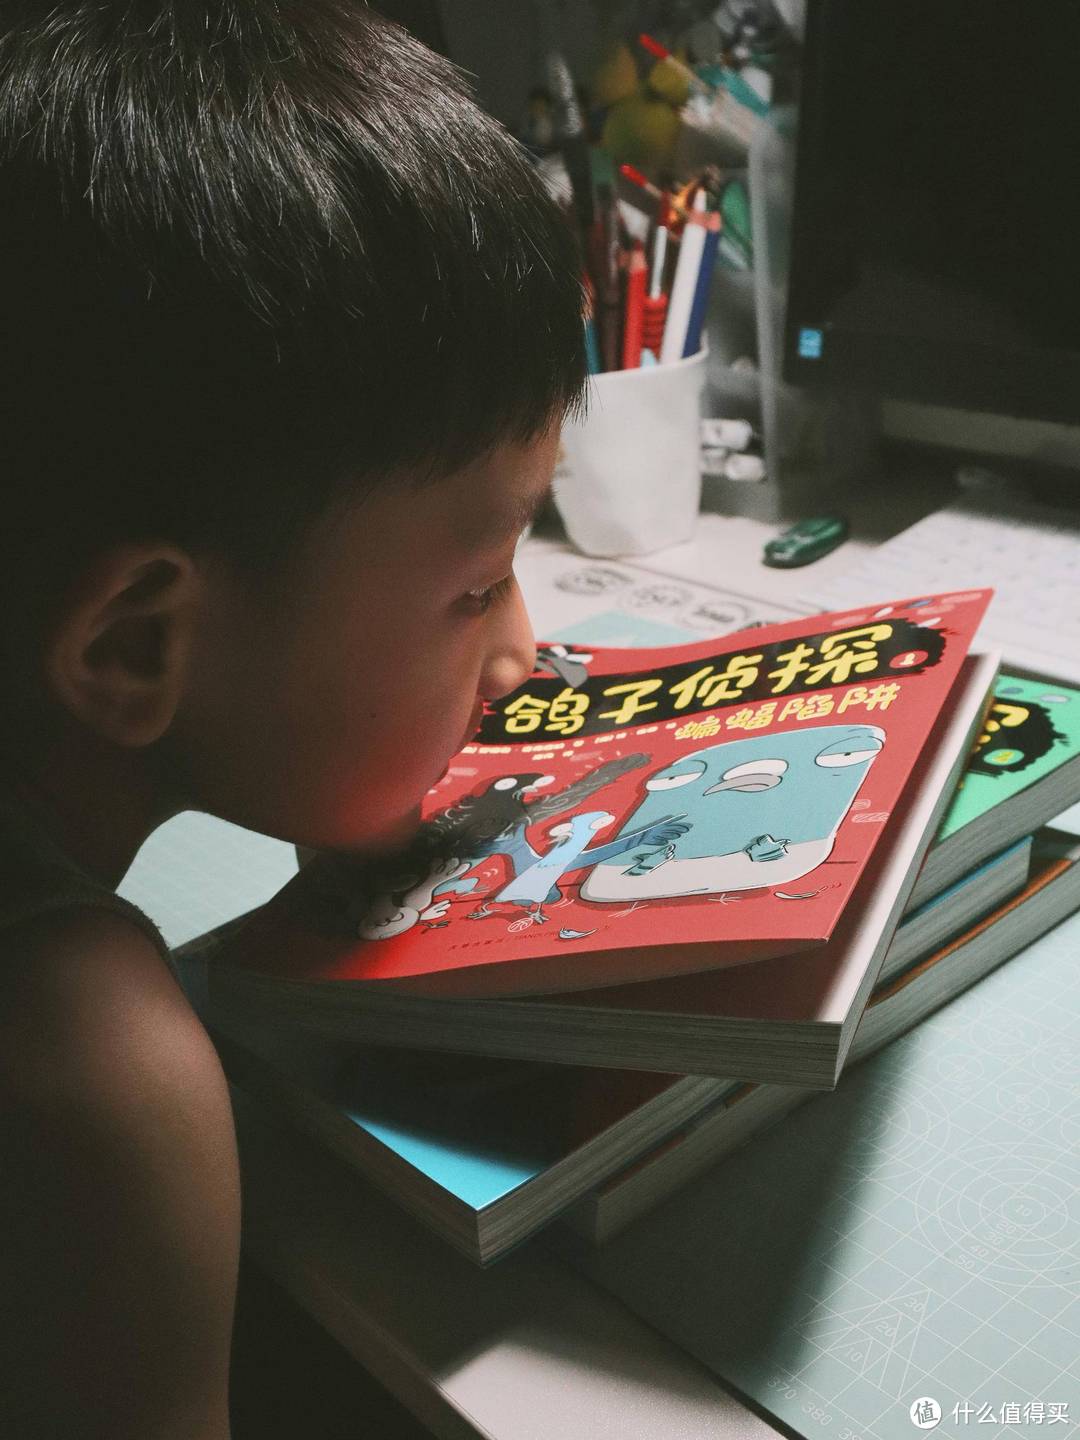 【收藏】侦探推理破案题材童书，让孩子越看越聪明！